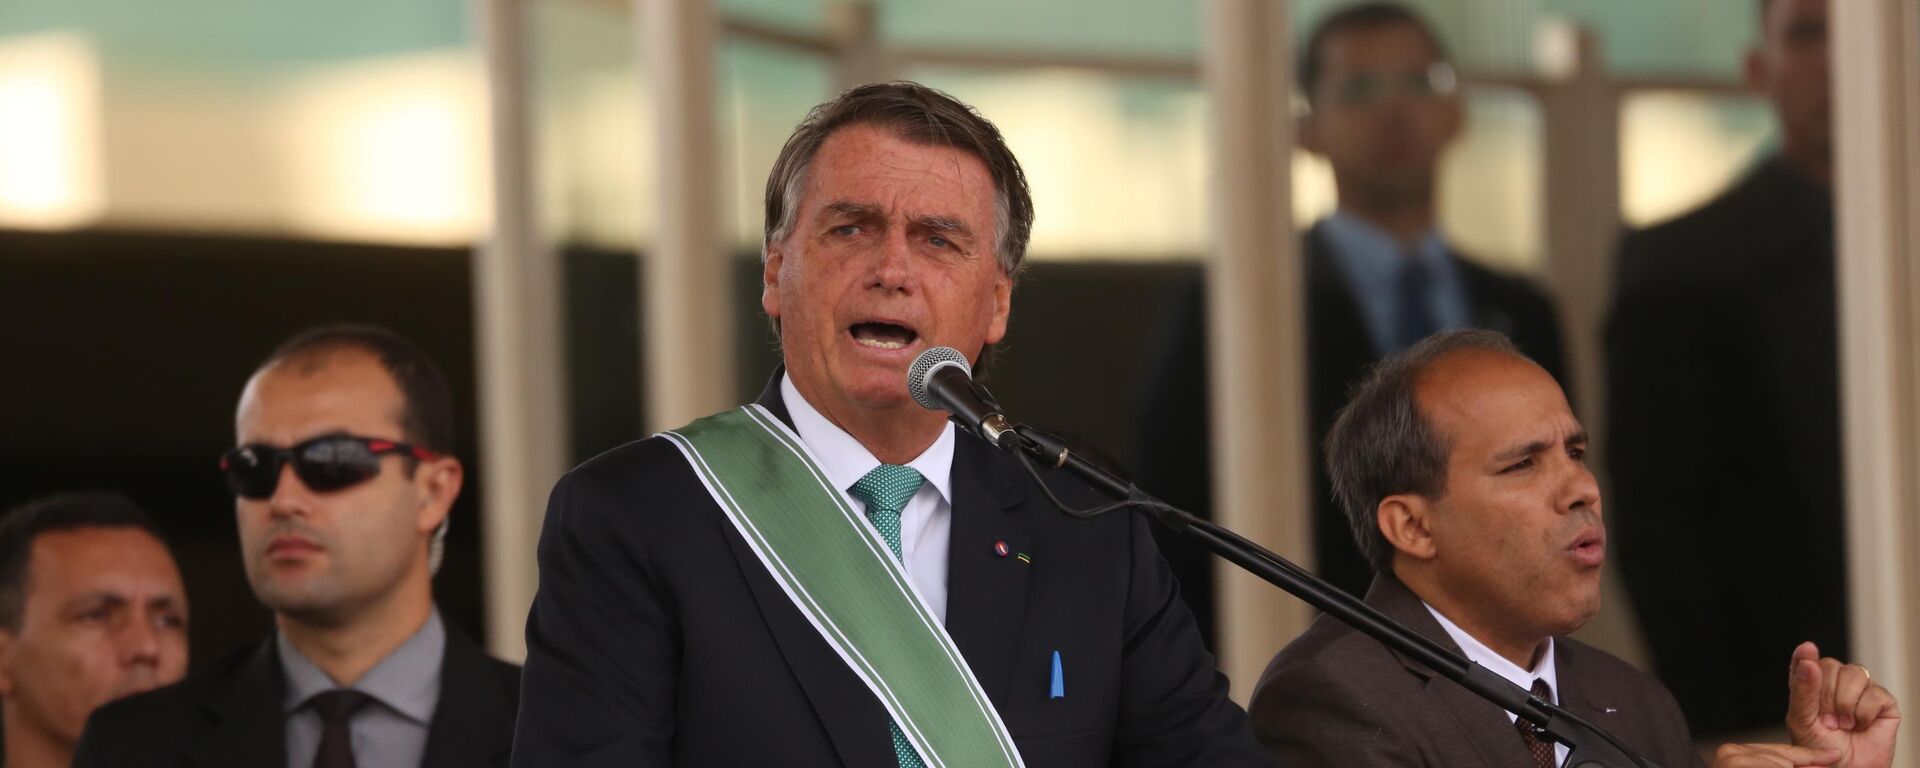 O presidente Jair Bolsonaro (PL) participa de cerimônia do Dia do Exército, com a Imposição da Ordem do Mérito Militar e da Medalha Exército Brasileiro, em Brasília, DF, 19 de abril de 2022  - Sputnik Brasil, 1920, 19.04.2022